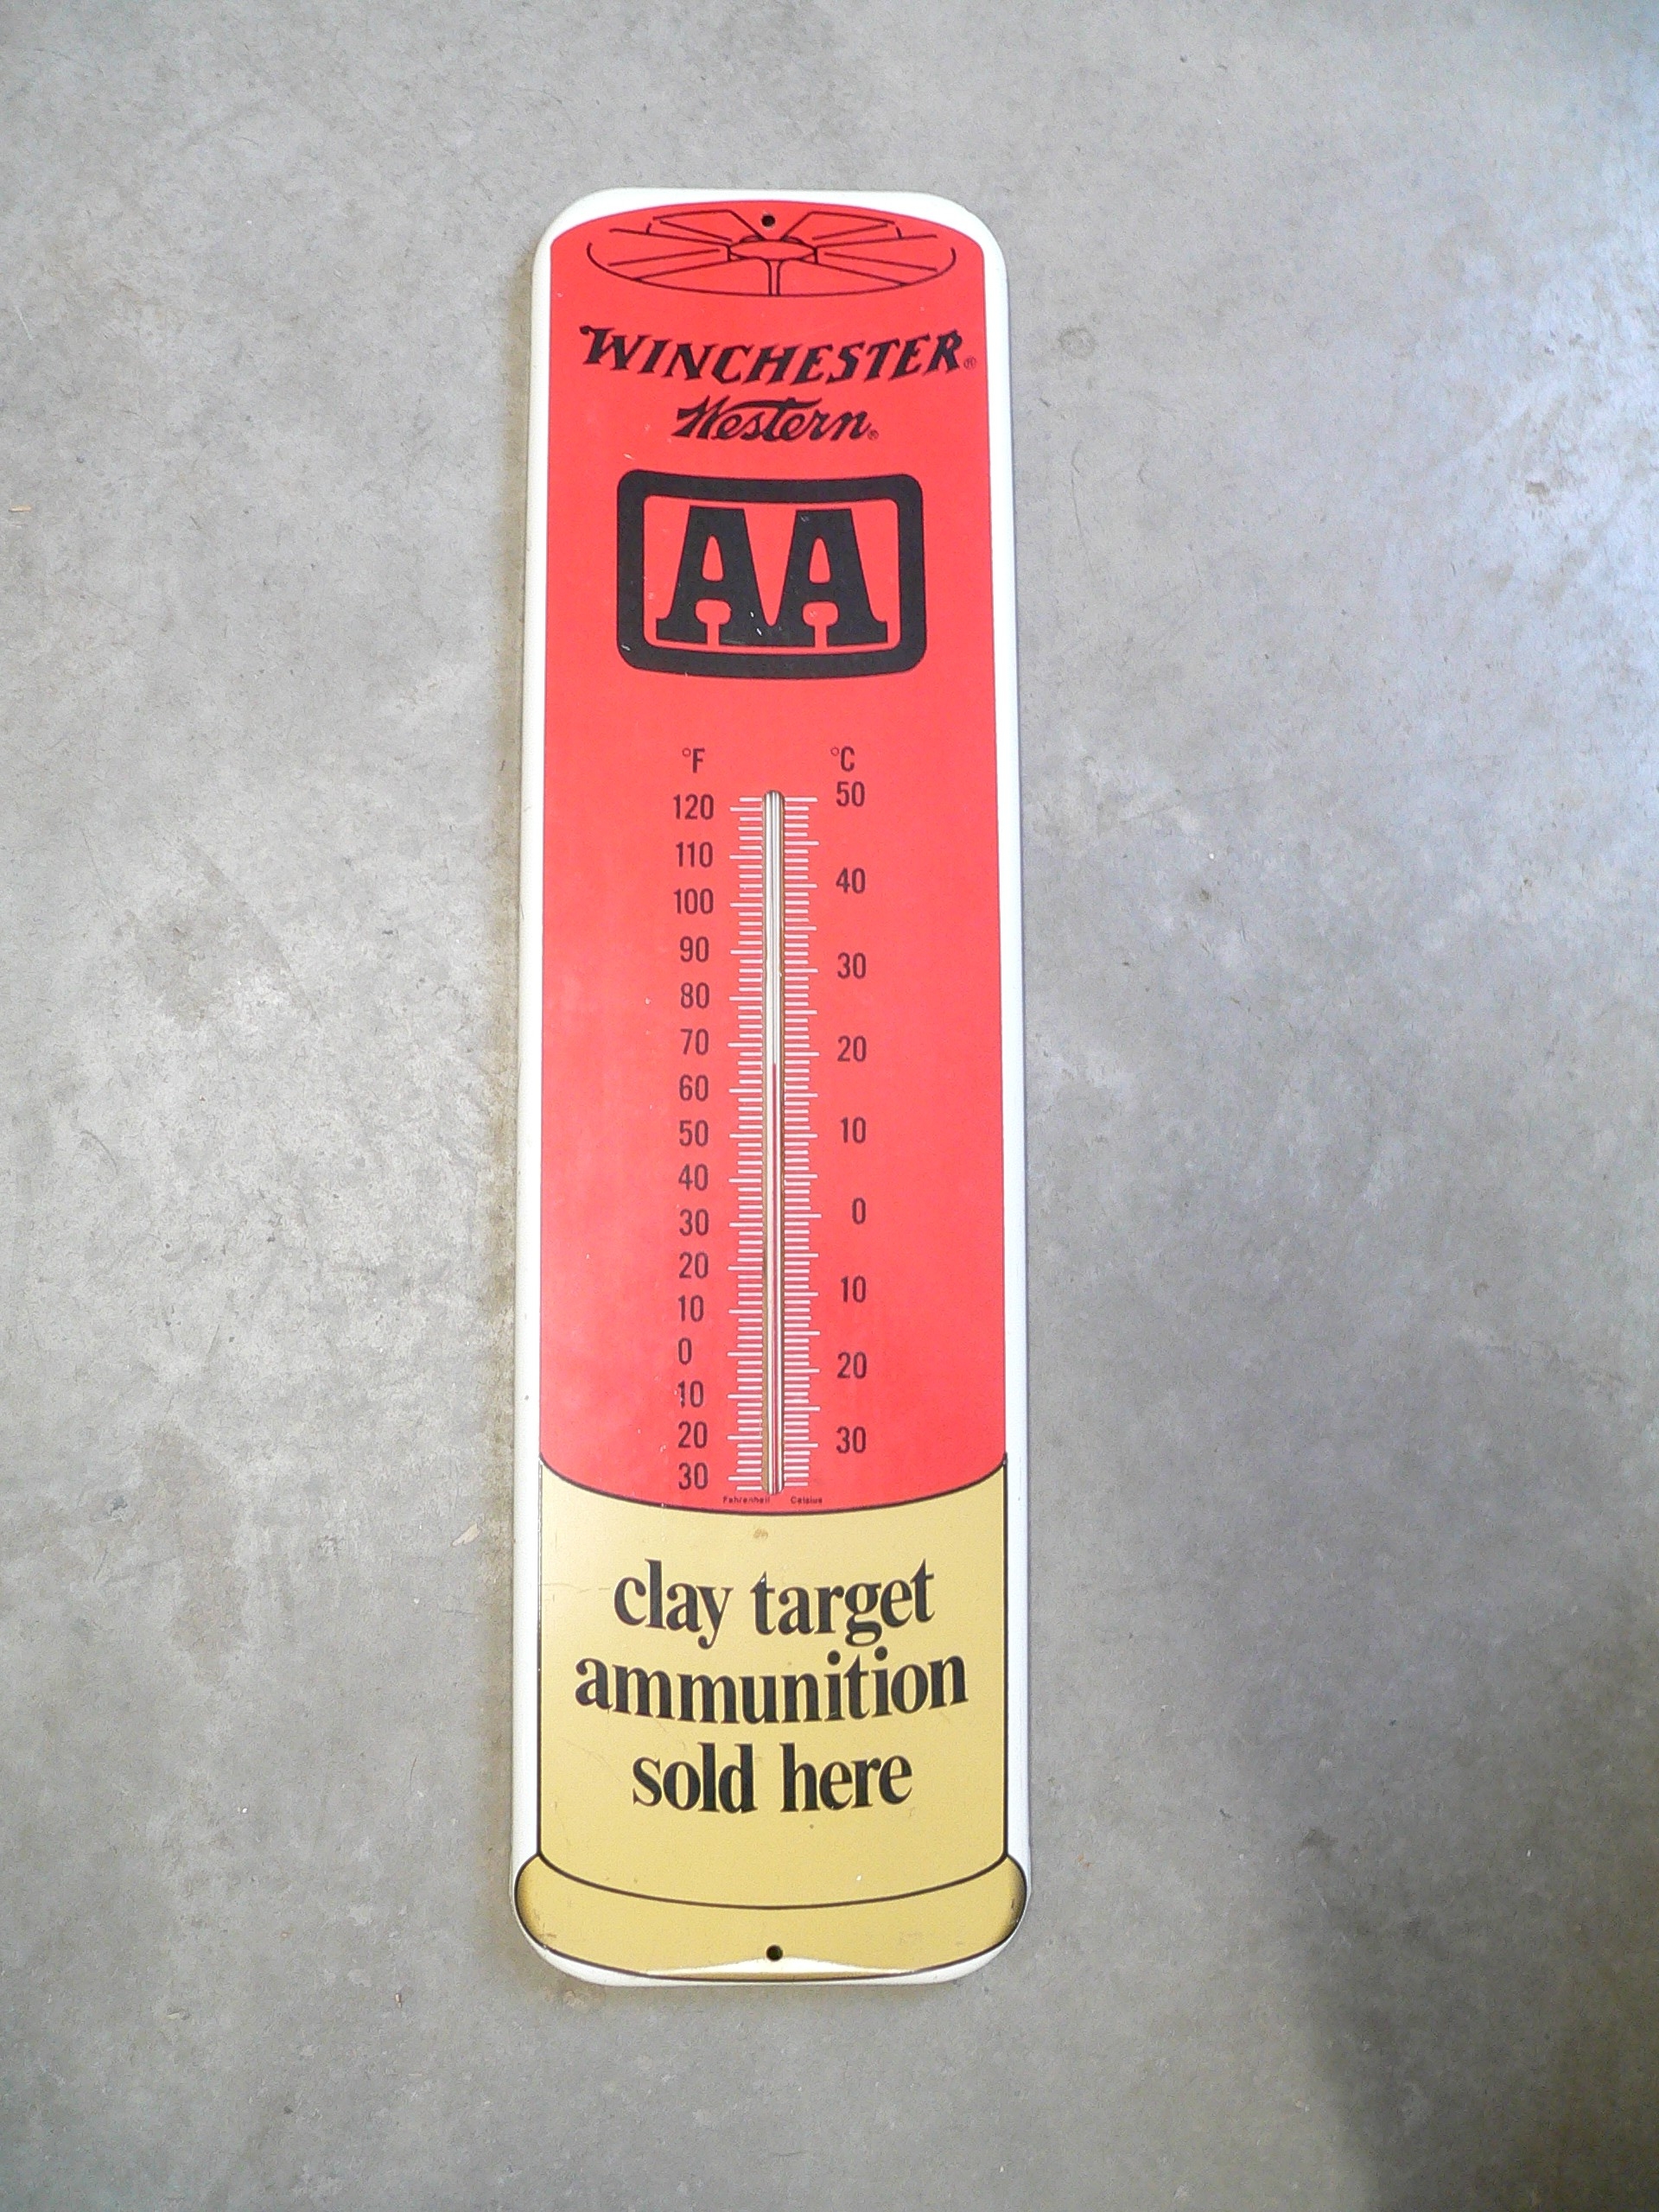 Thermomètre winchester antique # 11068